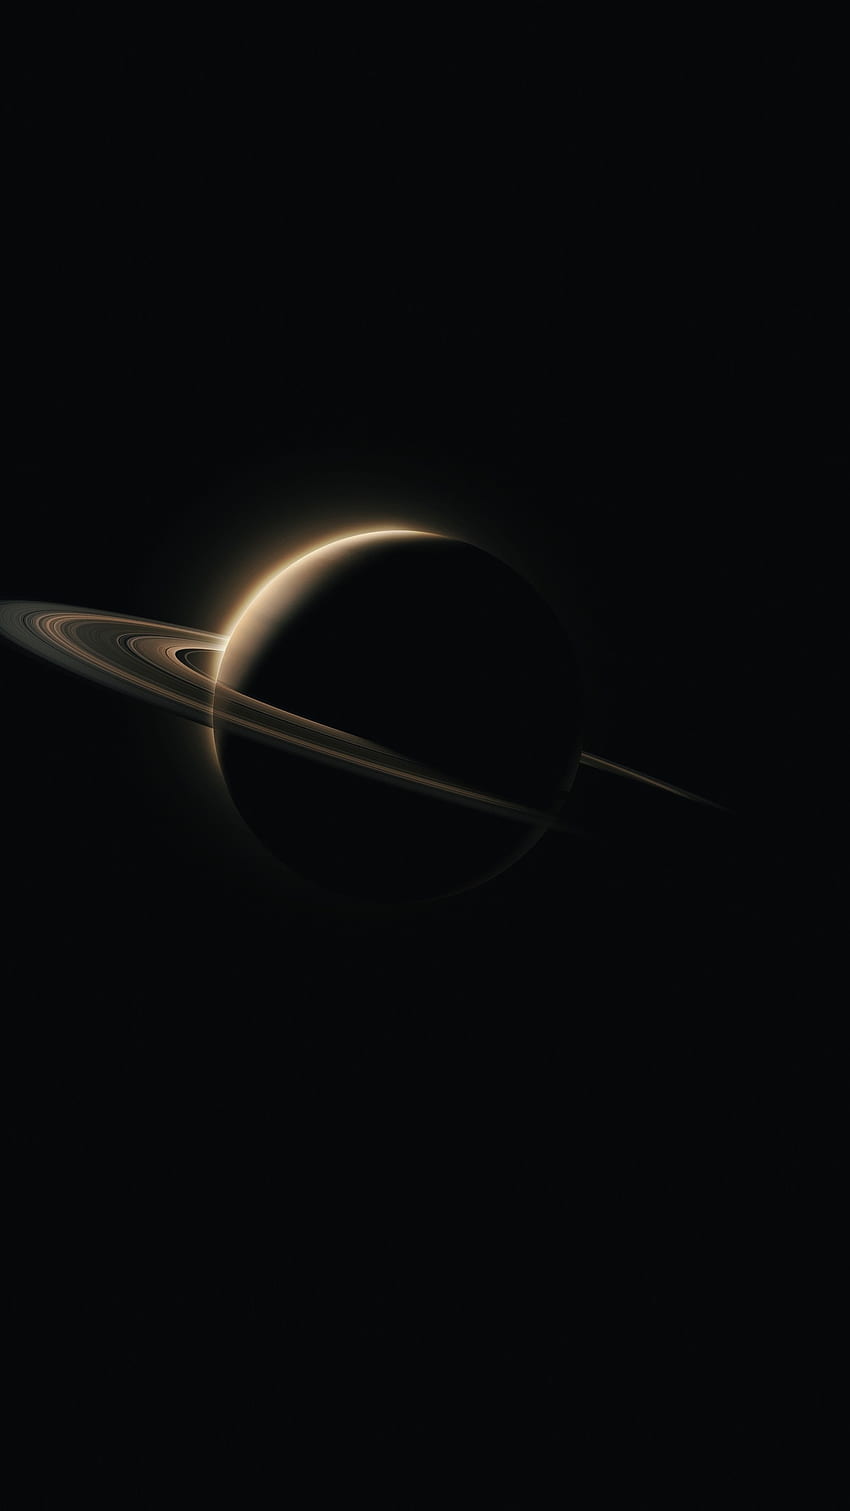 土星、惑星、暗黒。 惑星、闇、宇宙電話、黒い太陽系 HD電話の壁紙